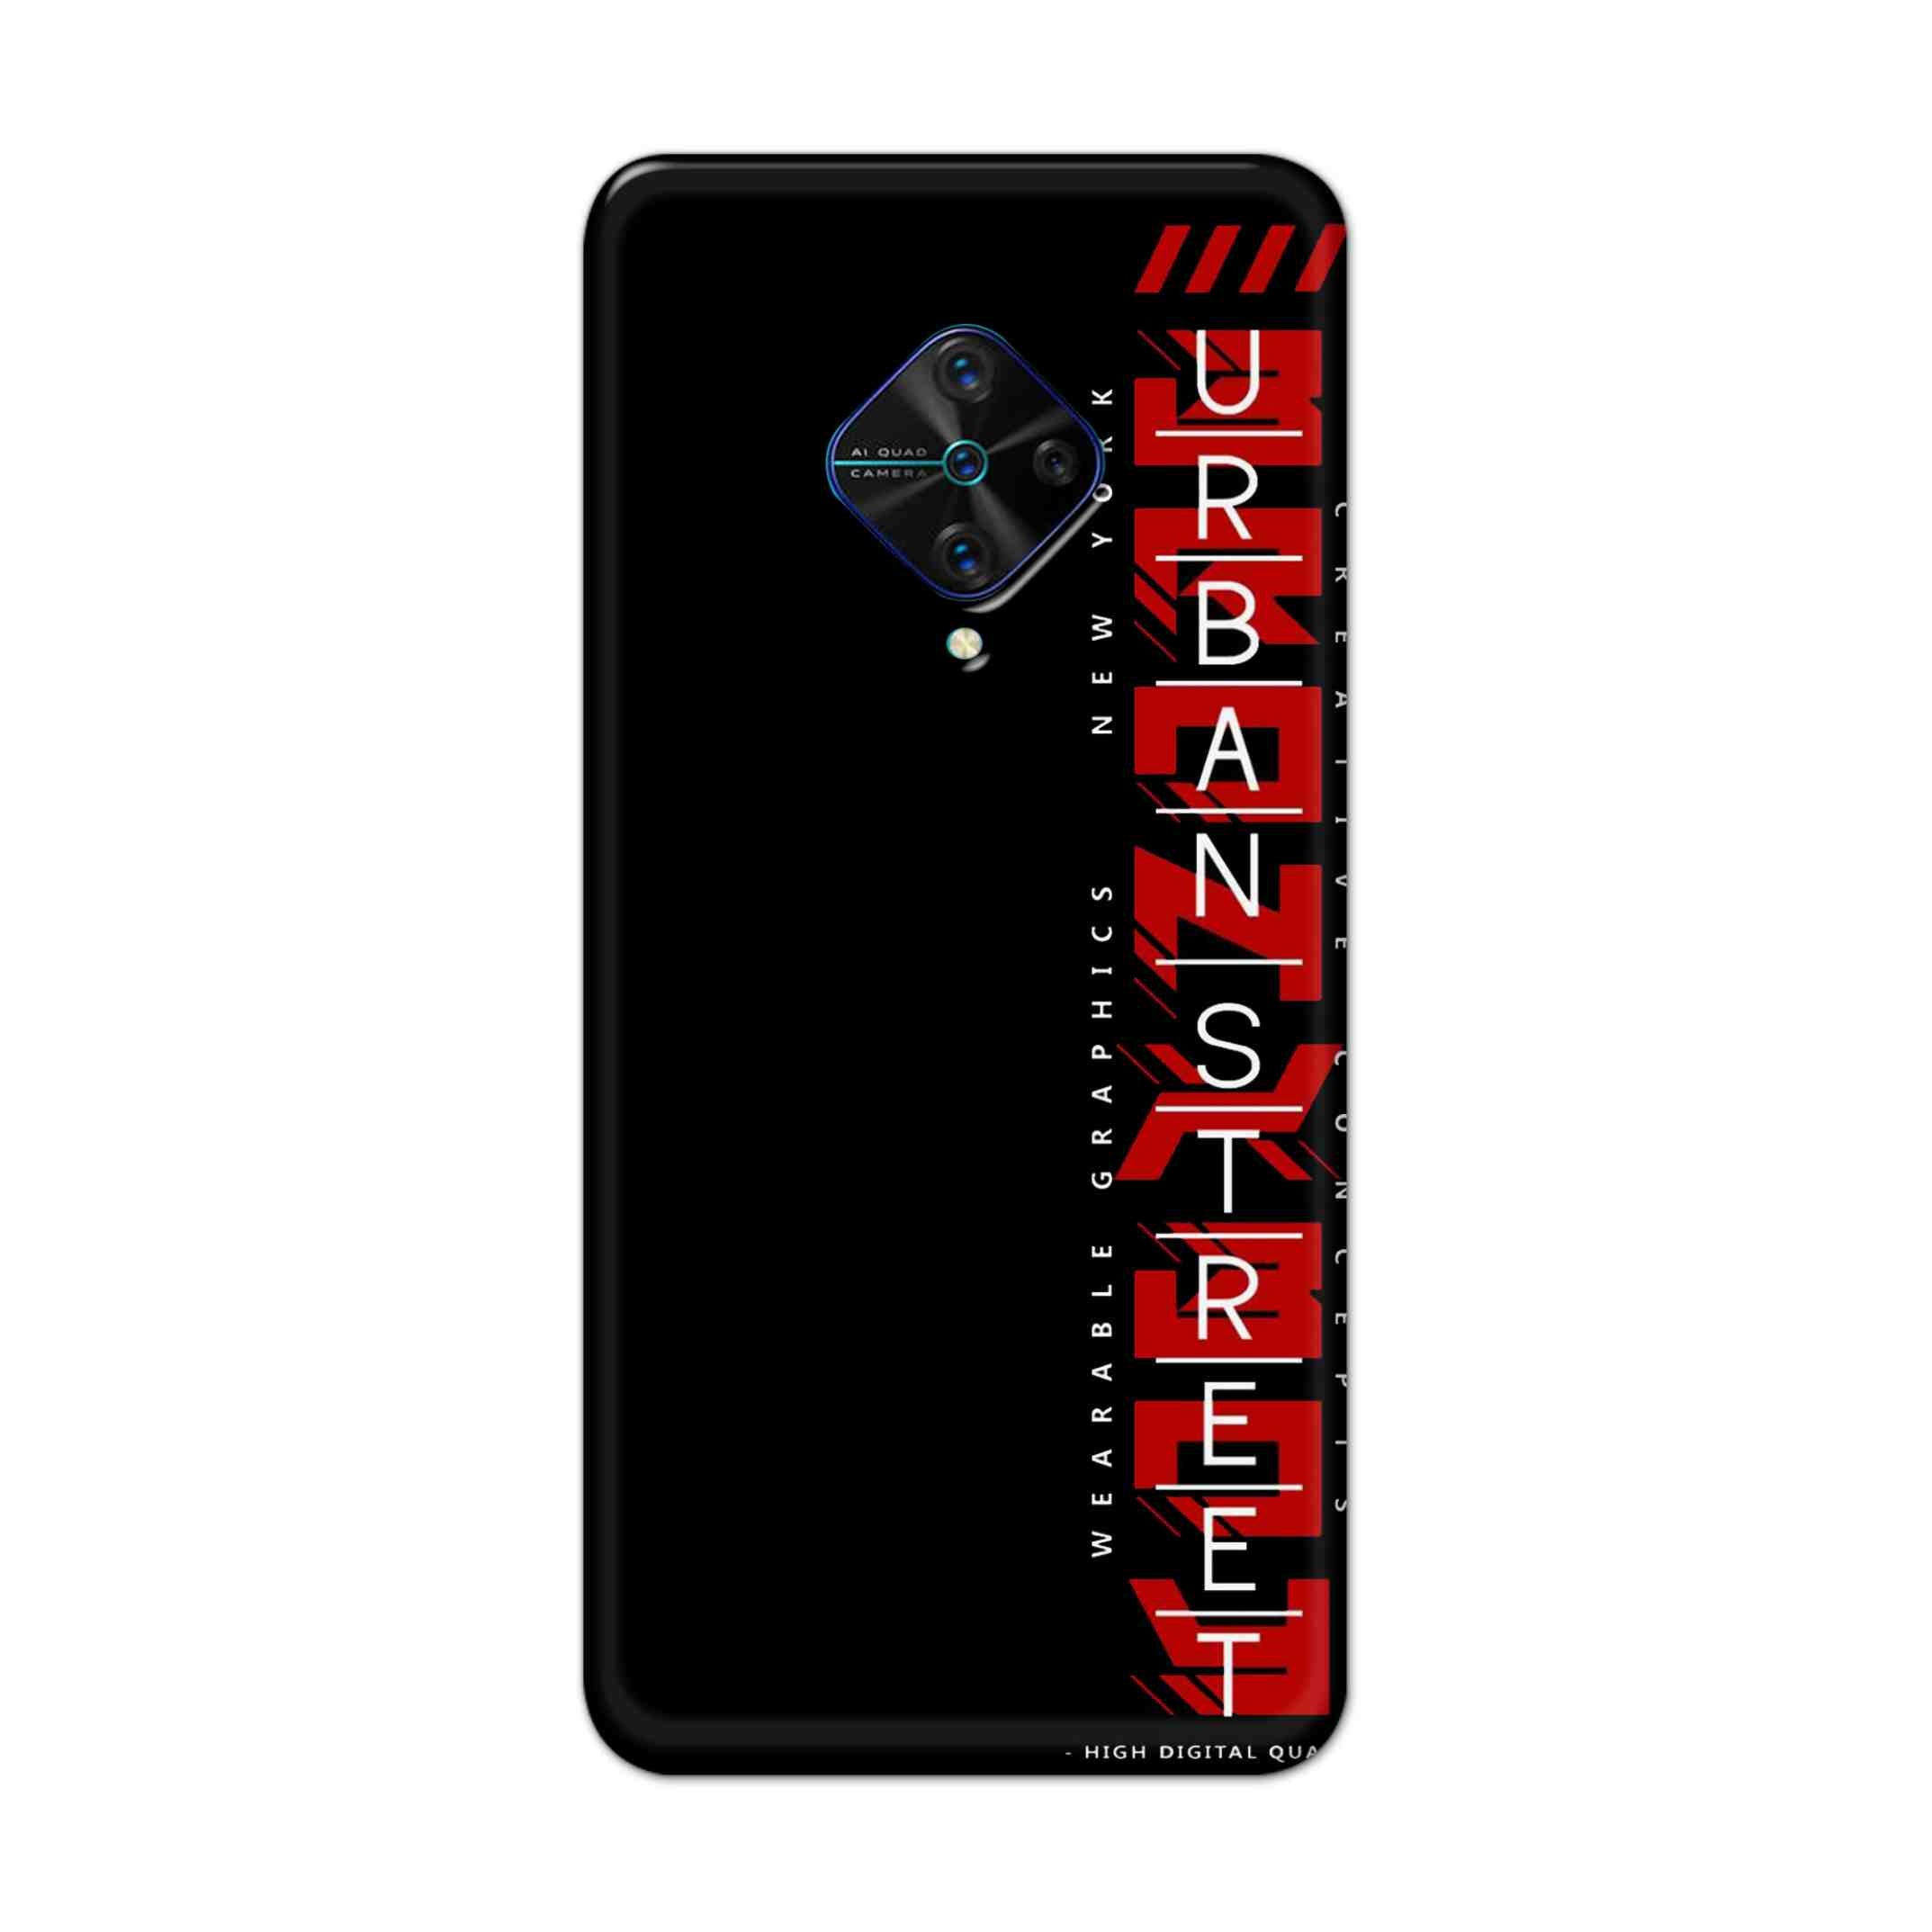 Buy Urban Street Hard Back Mobile Phone Case Cover For Vivo S1 Pro Online